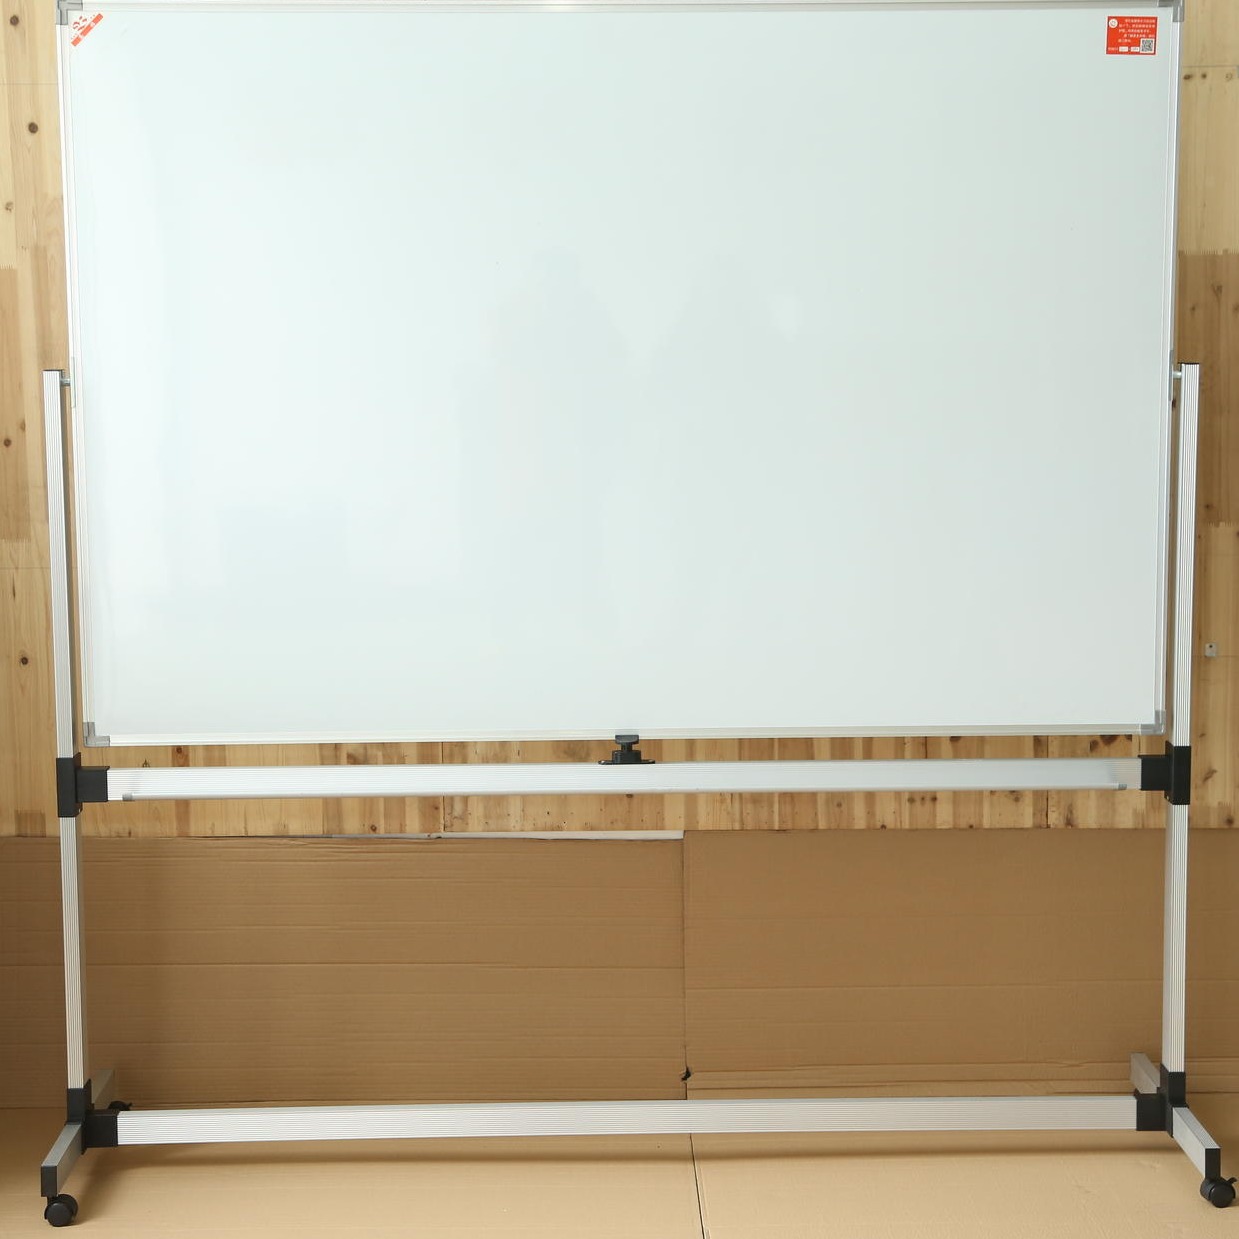 企业公司开会用的手写白板支架式移动立式磁性挂式写字记事板黑板批发图片